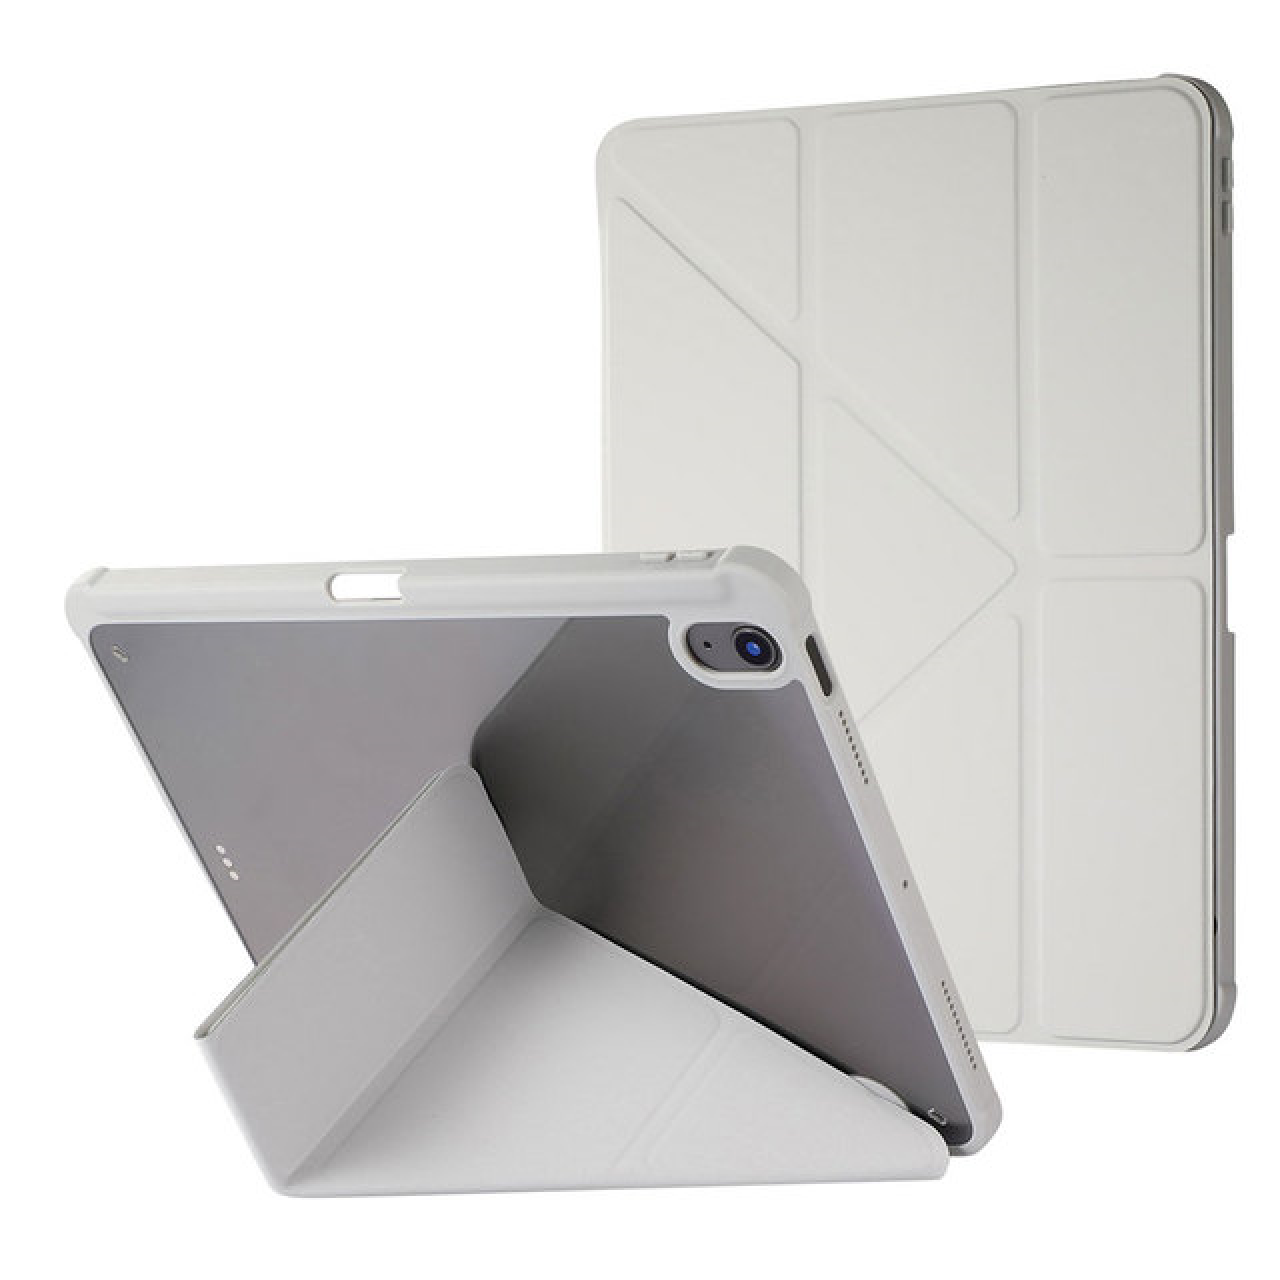 Θήκη Τάμπλετ Μαγνητική Apple iPad Air 4 - 5 10.9 inch με Προστασία Κάμερας και Θέση για Γραφίδα - Tablet Case - Grey